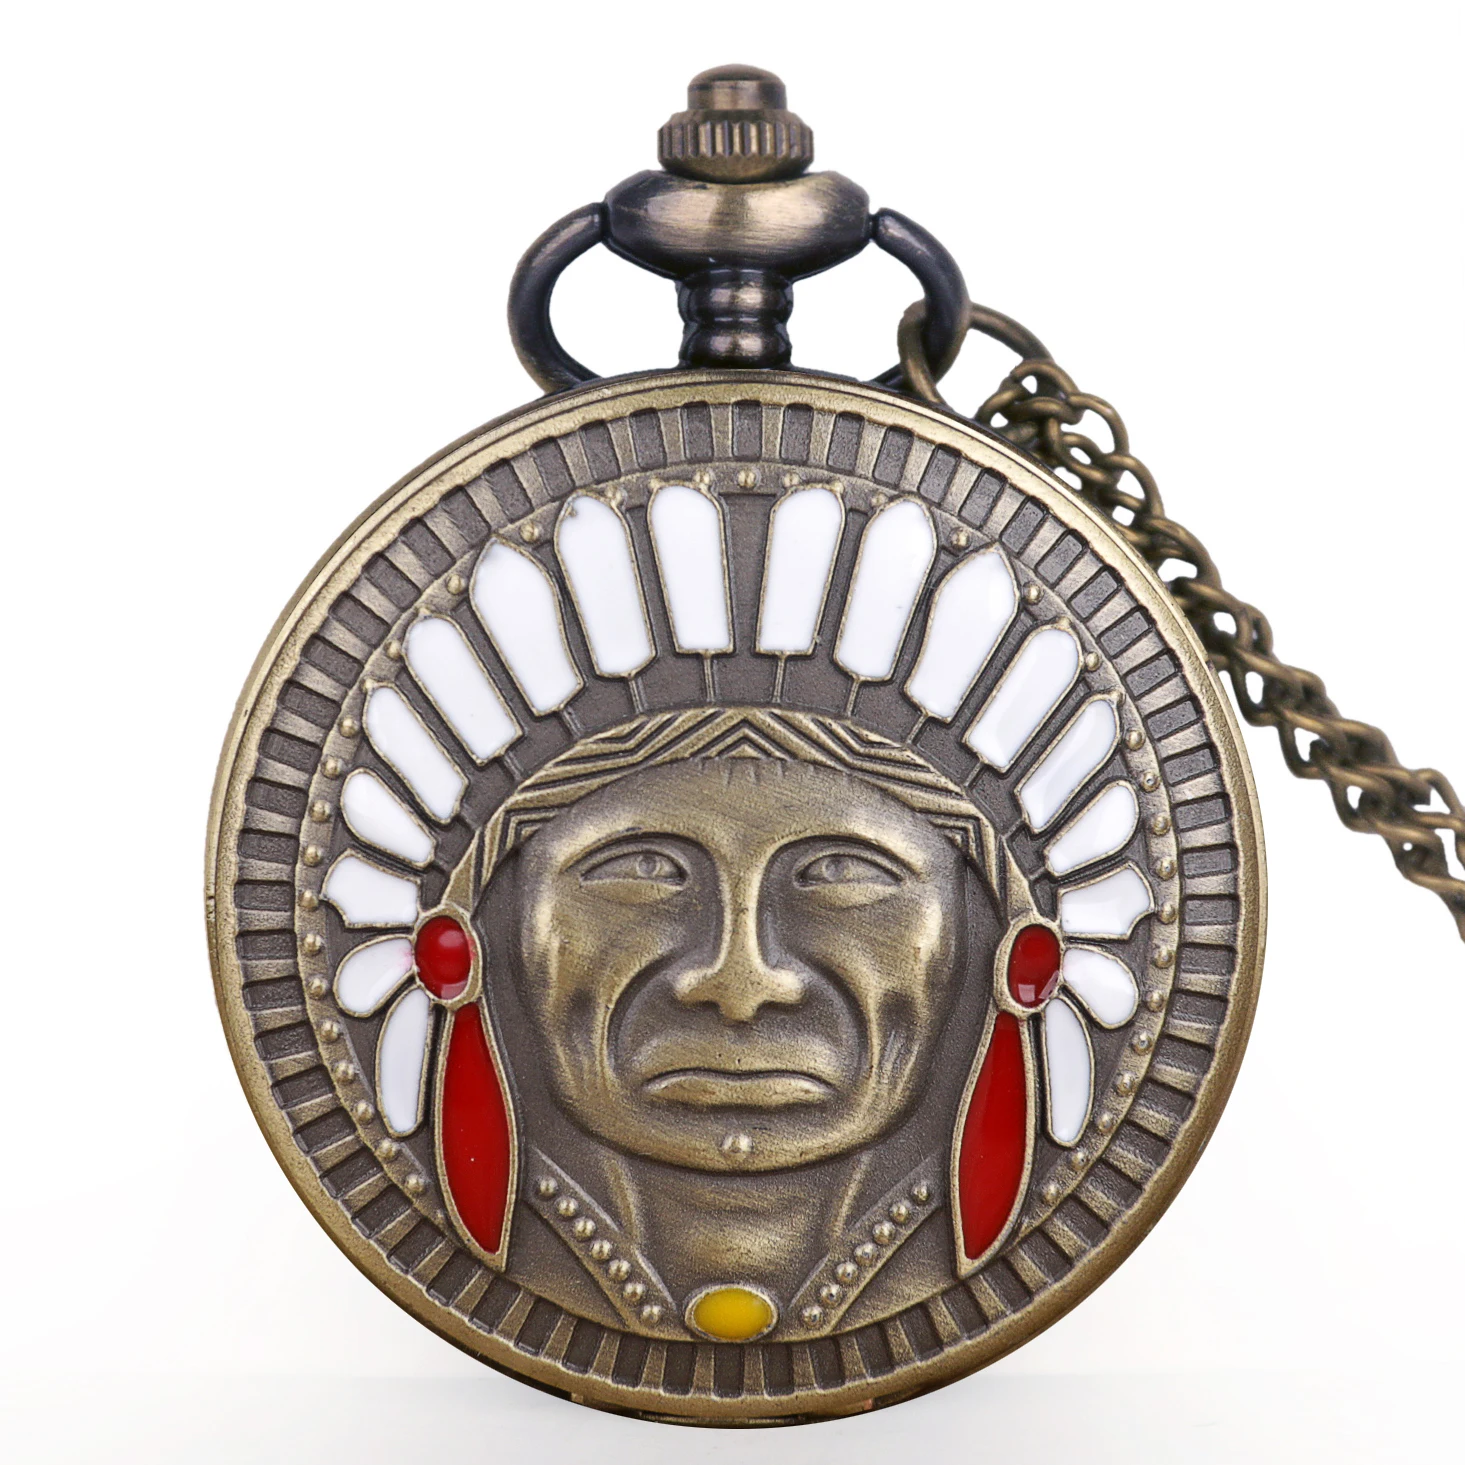 

New Bronze Ancient Indian Old Man Portrait Design Quartz Fob Pocket Watch Pendant Necklace Chain Souvenir Gifts For Men Women